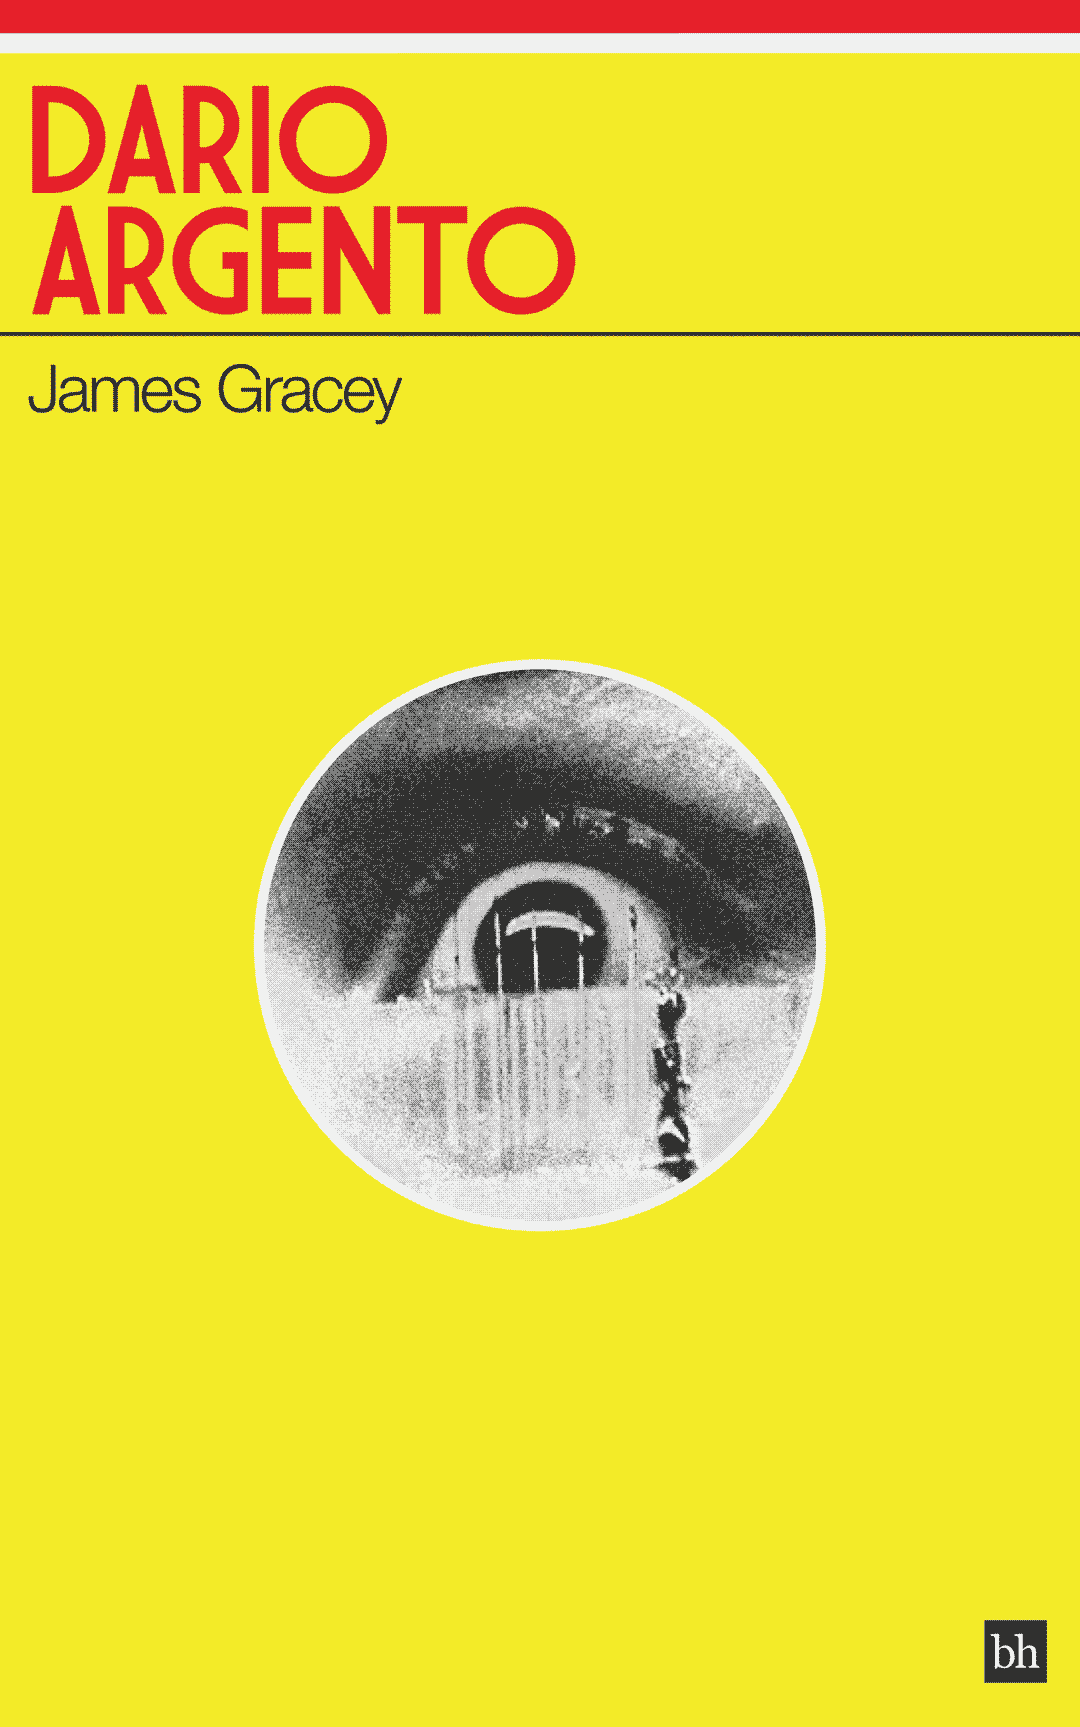 Dario Argento by James Gracey